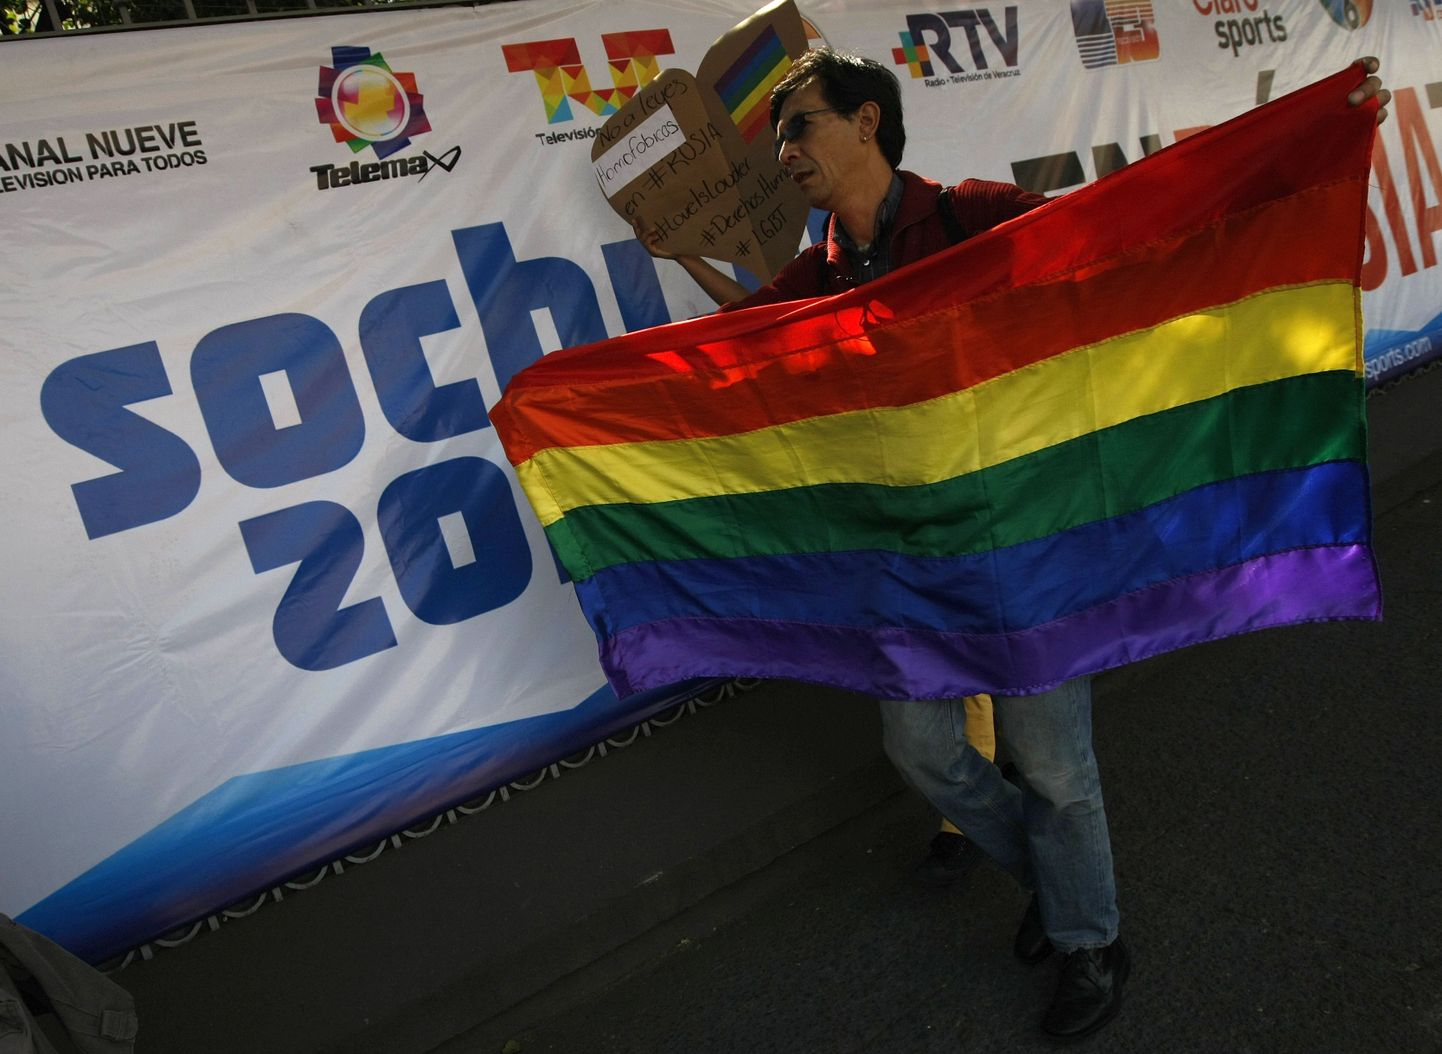 Venemaal toimuva diskrimineerimise vastane protestiaktsioon Mexico Citys.